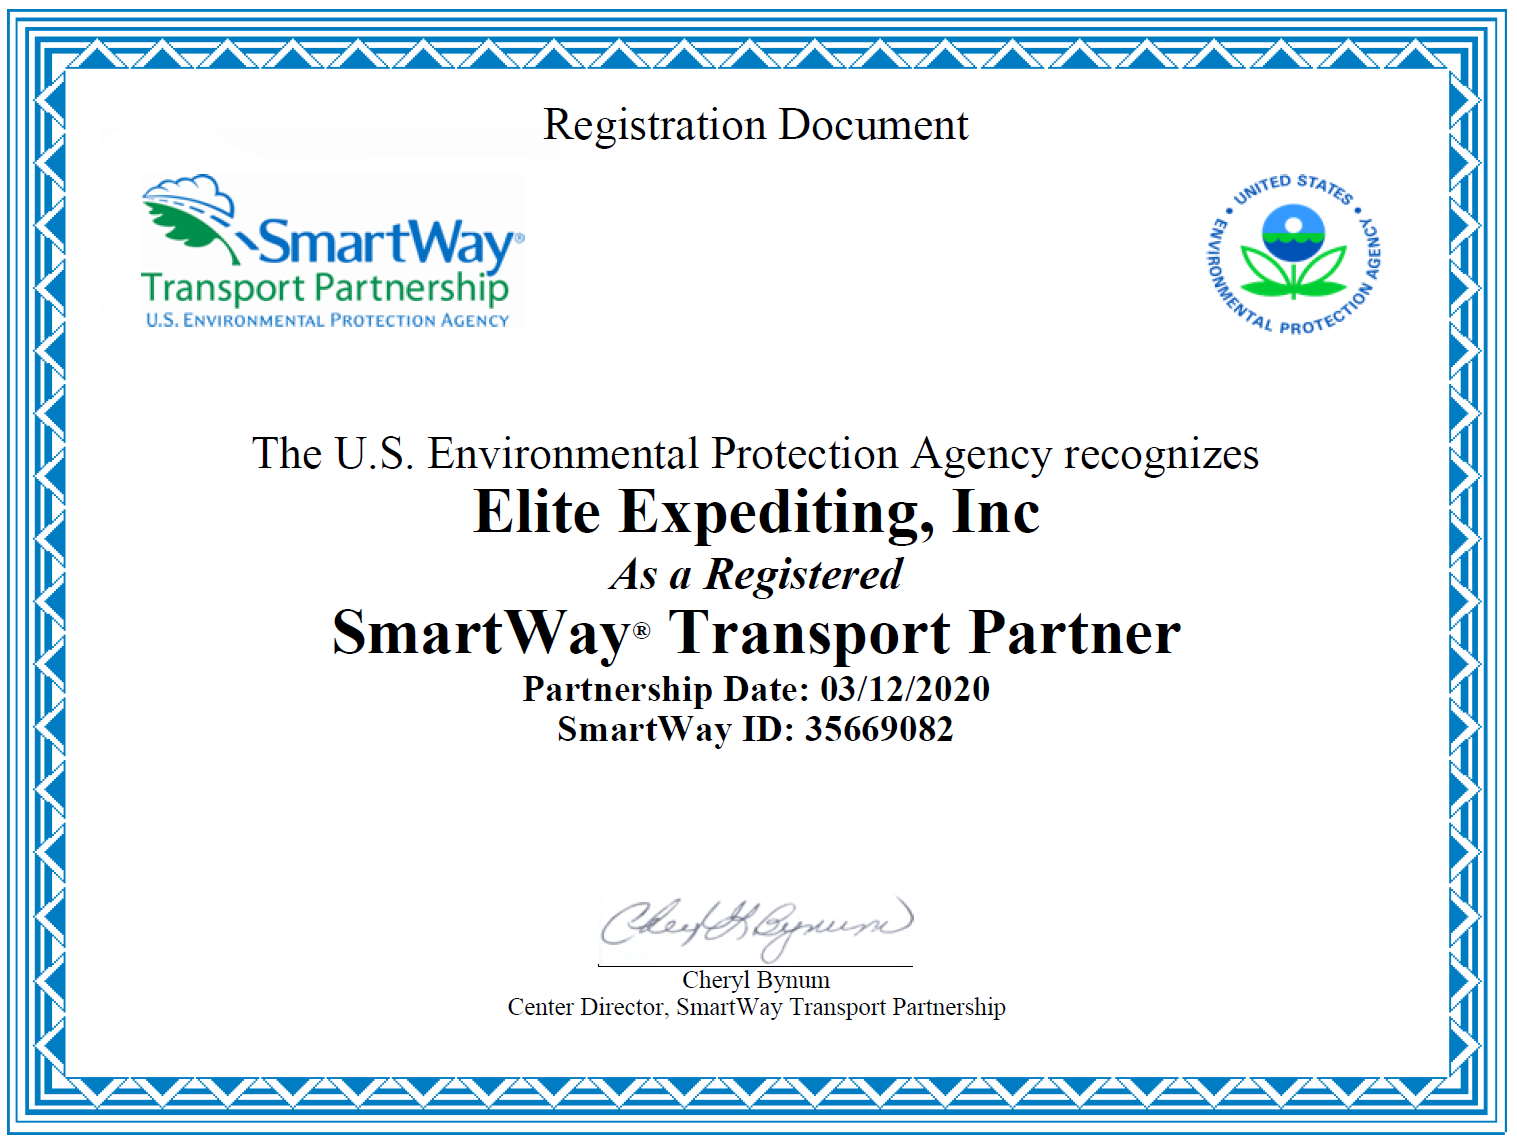 smartway certificate